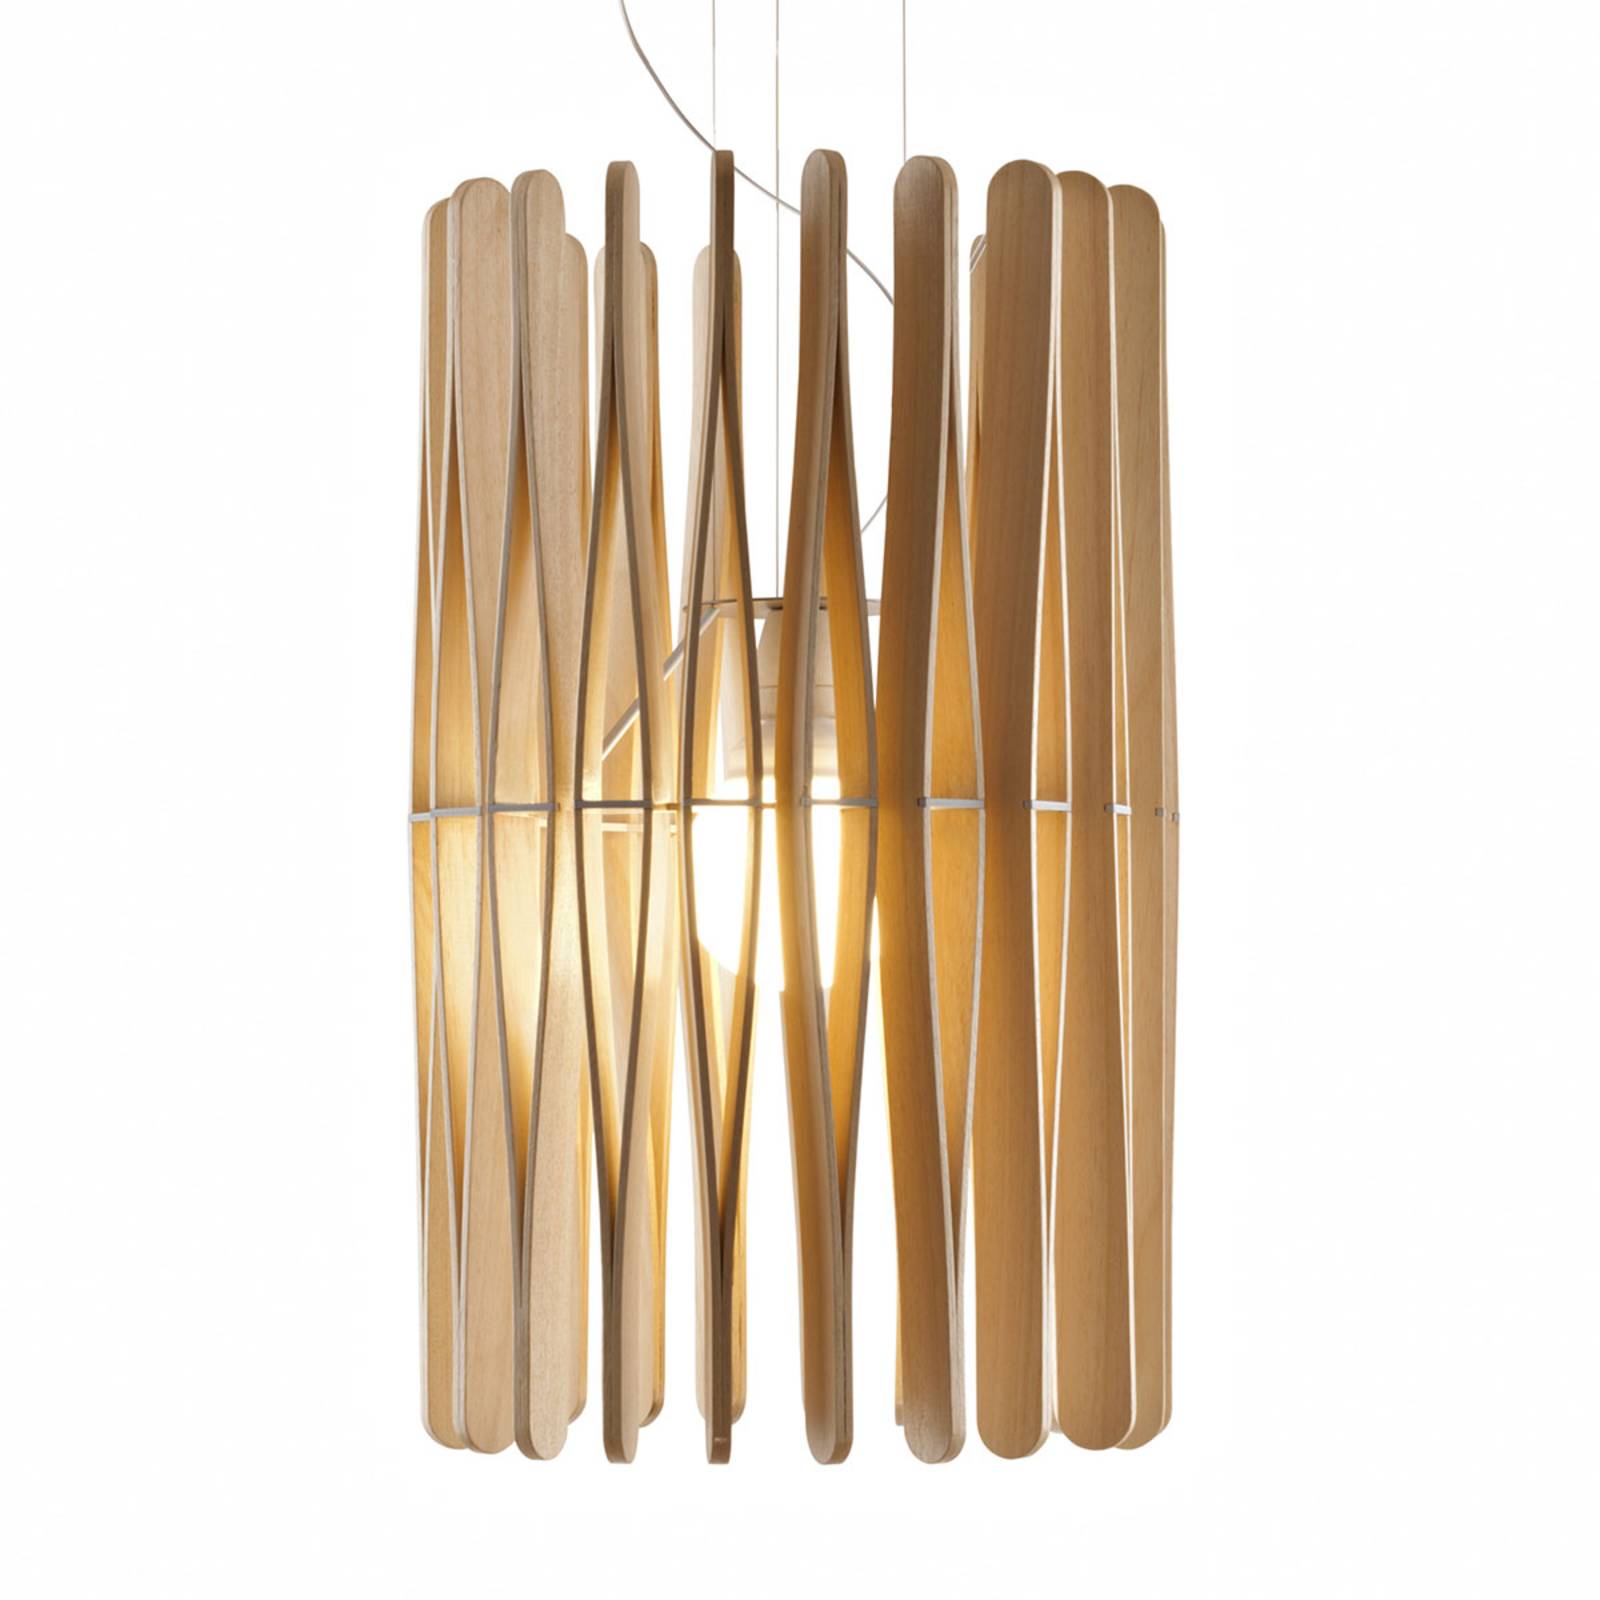 2: Fabbian Stick hængelampe i træ, cylindrisk, 43 cm